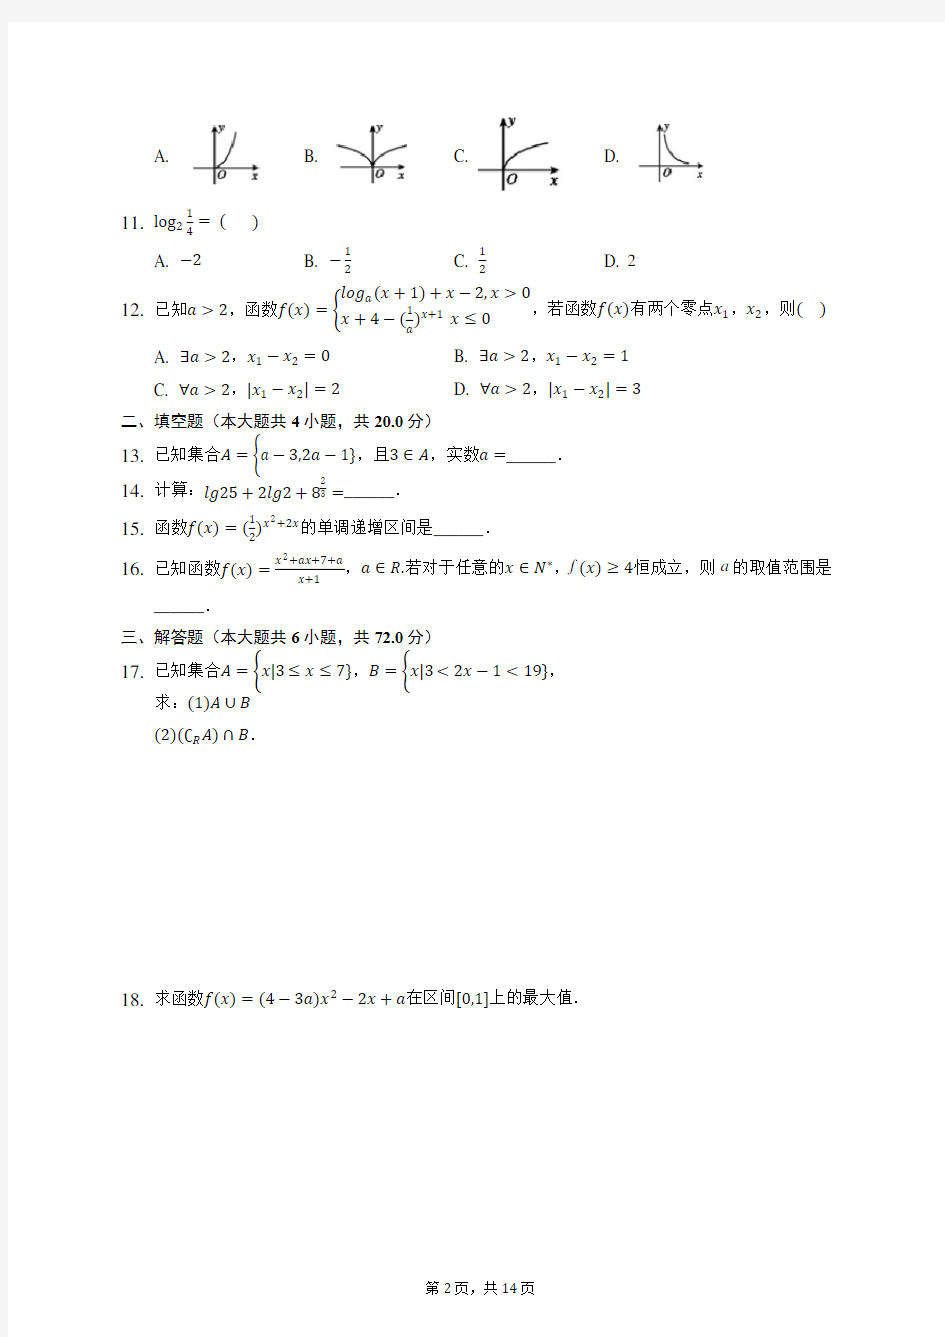 2019-2020学年重庆八中高一(上)期中数学试卷 (含答案解析)